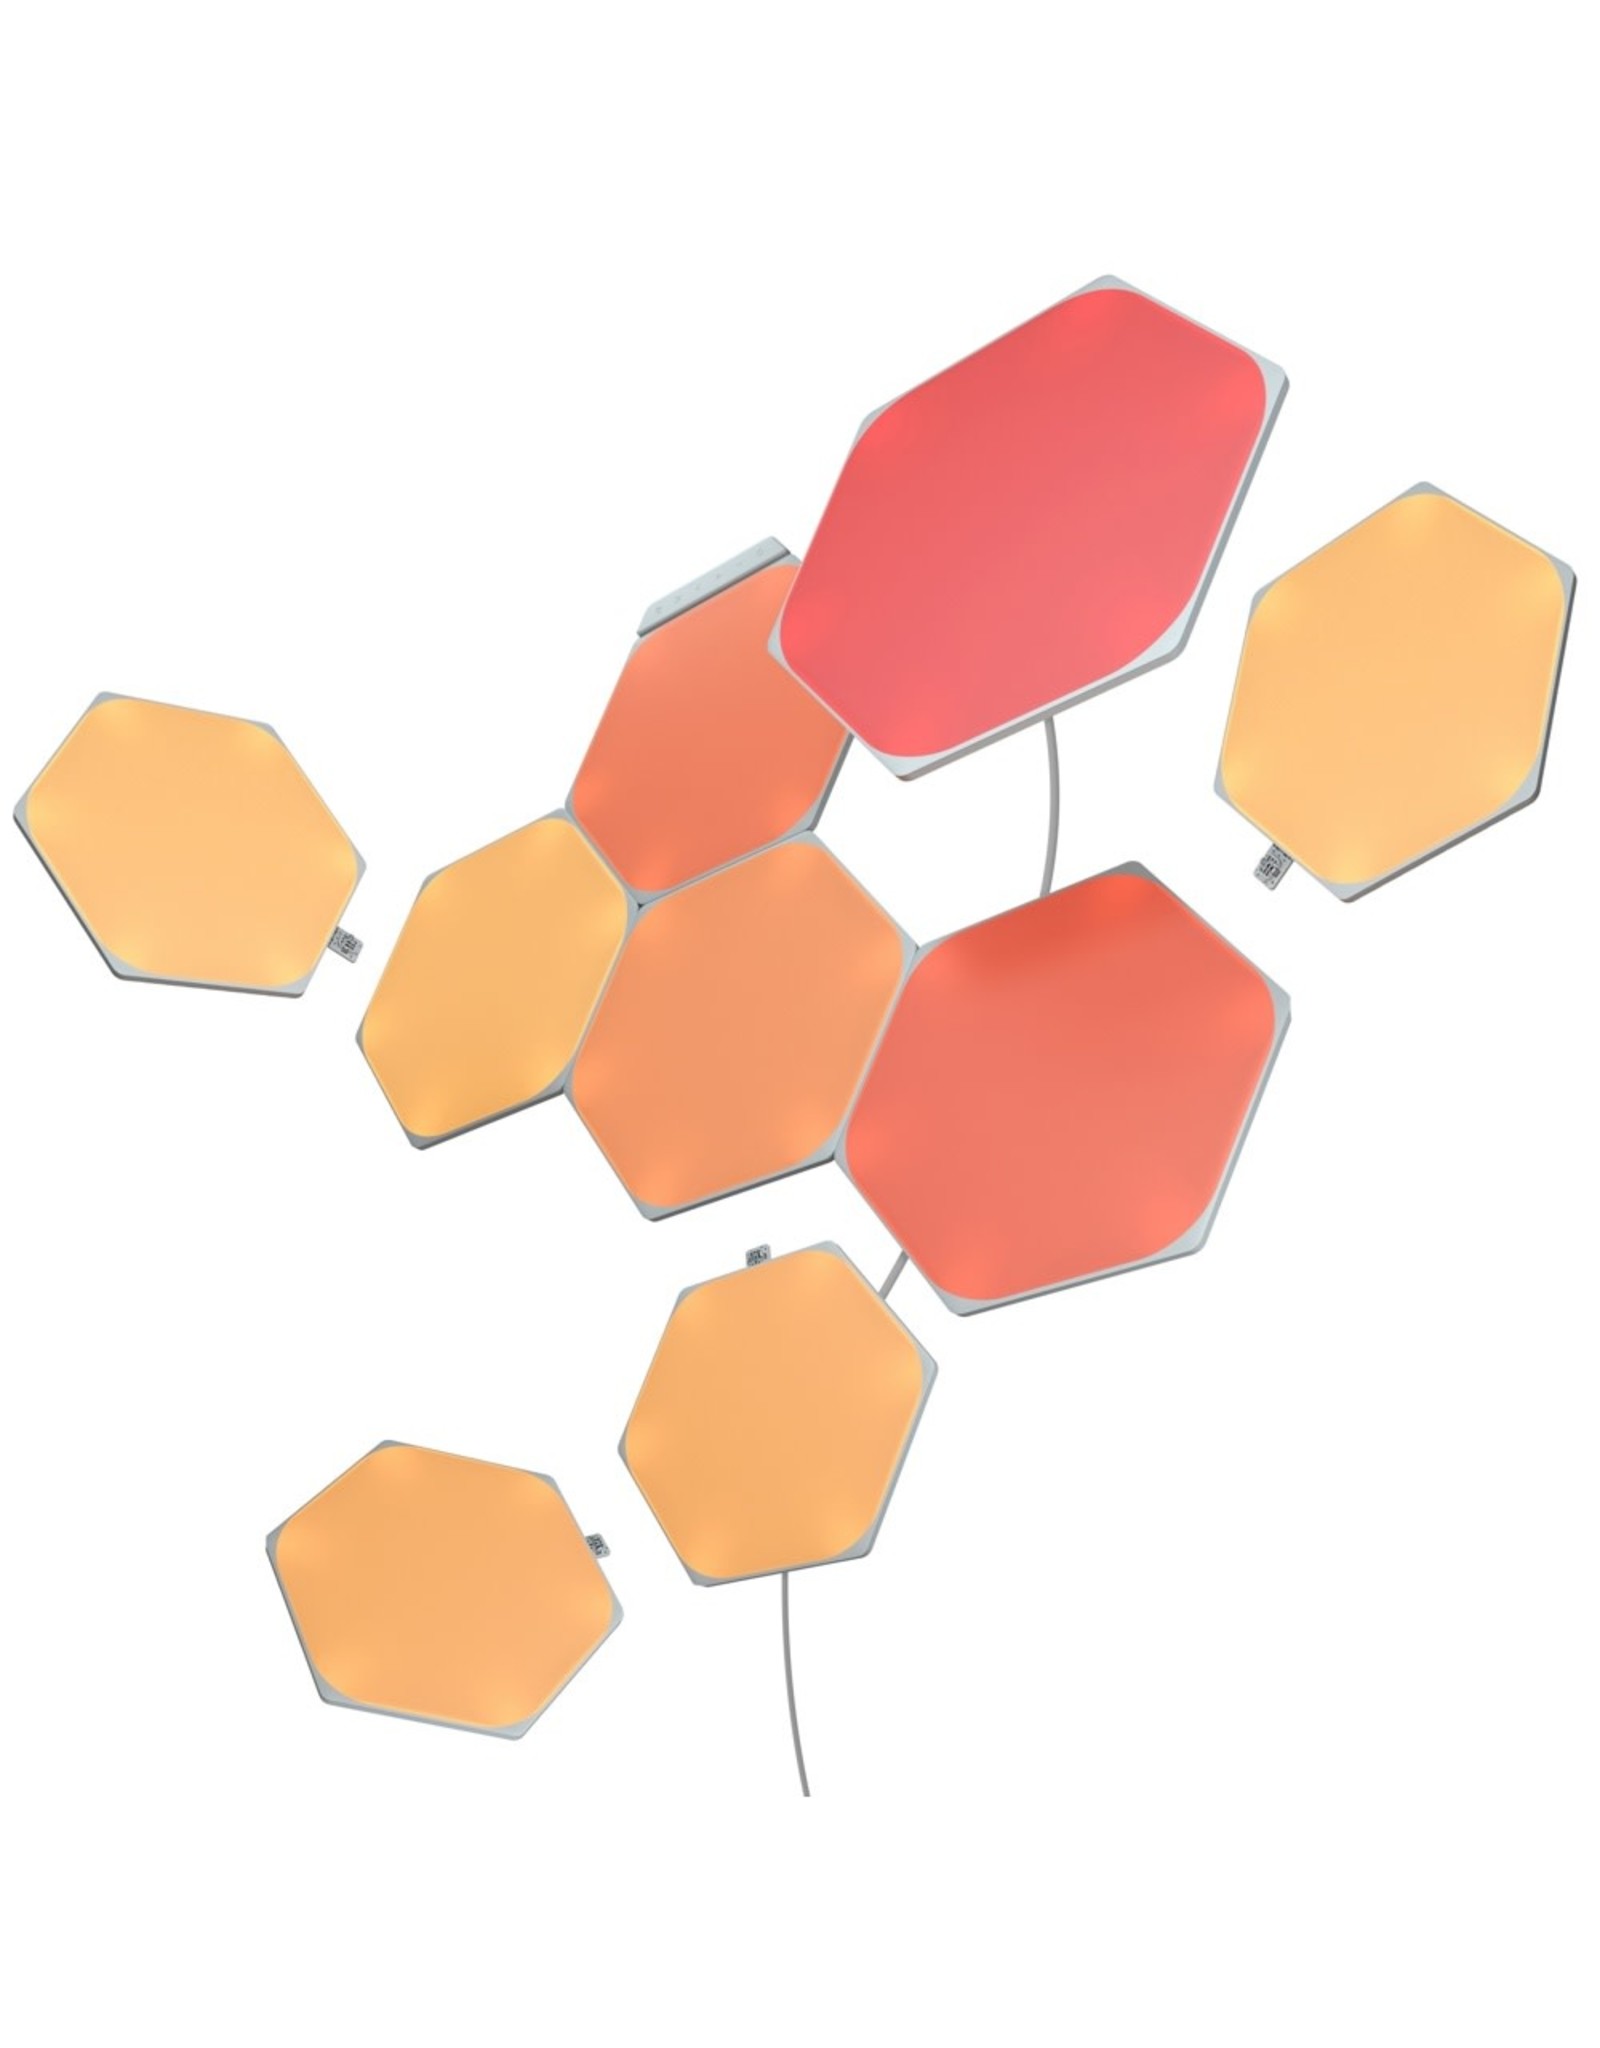 Nanoleaf Nanoleaf Shapes - Hexagons Starter Kit (9 Panels)